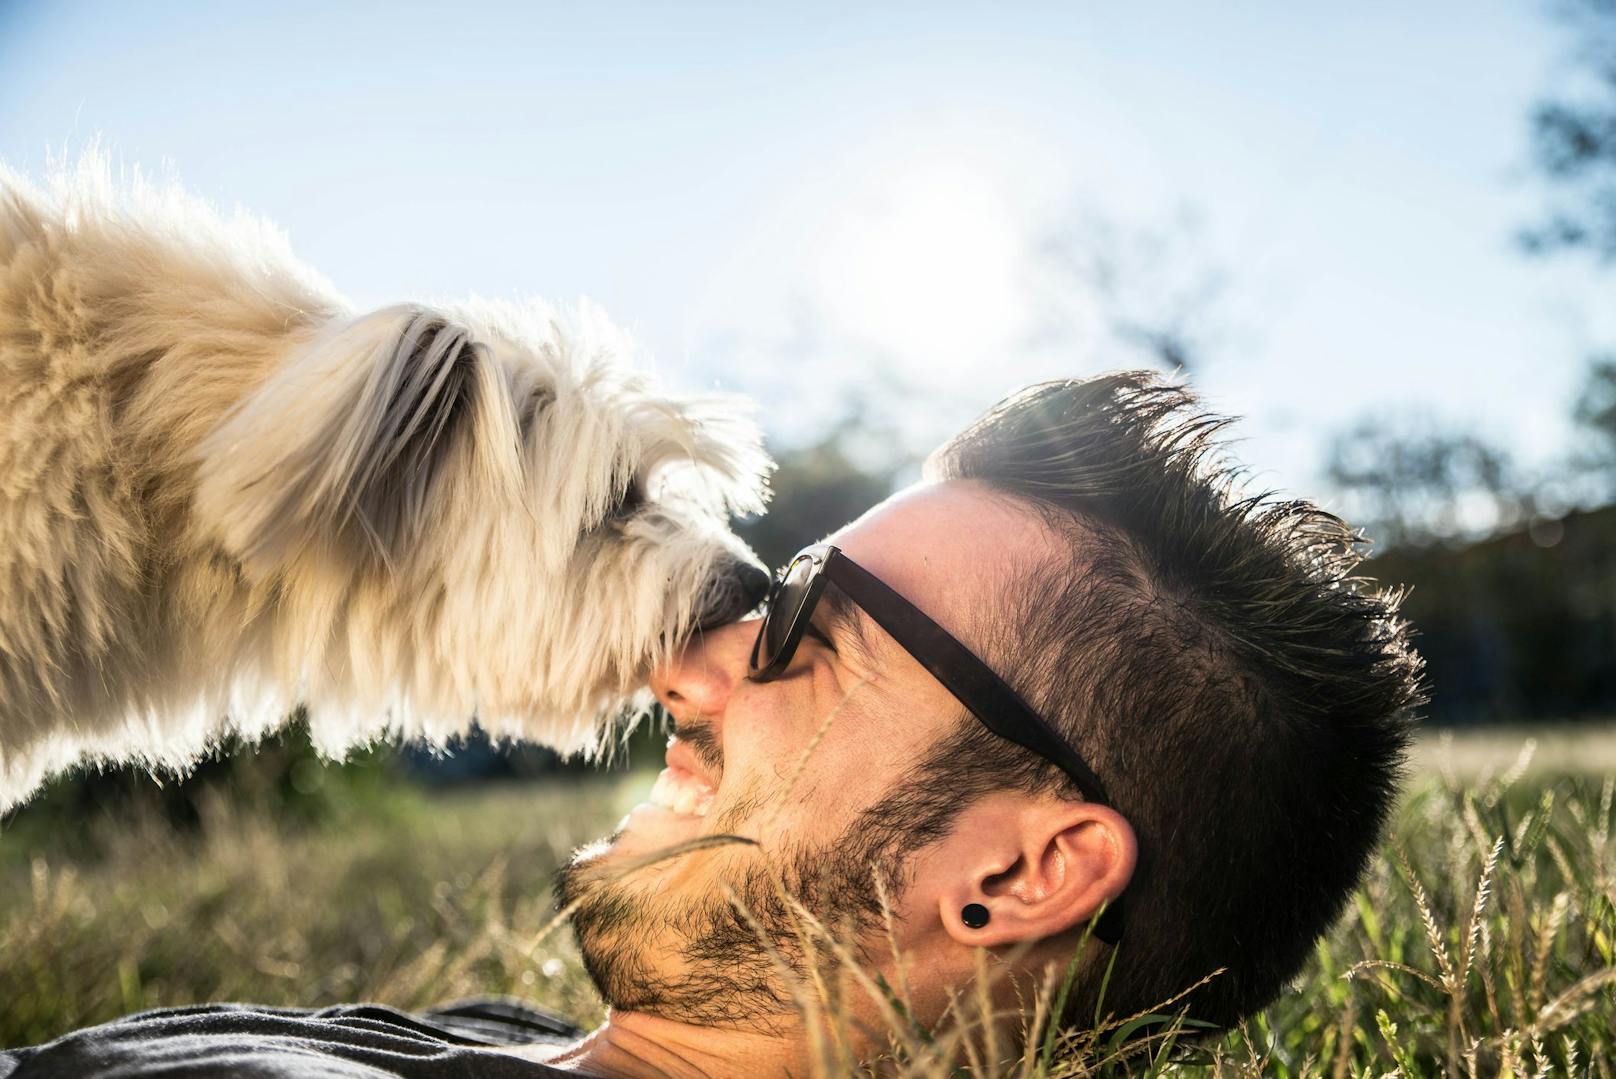 <strong>Der feuchte Kuss</strong>: Hundeküsse, so nass sie auch sein mögen, sind definitv ein Zeichen für "Ich kümmere mich um dich". Wenn dich dein Hund ableckt, dann weil er dich umsorgen möchte. That's Love. ACHTUNG - wir sprechen hier allerdings von freiwilligen "Küssen" - wenn man einen Hund dabei festhält, kann es auch ein Beschwichtigungssignal sein. 